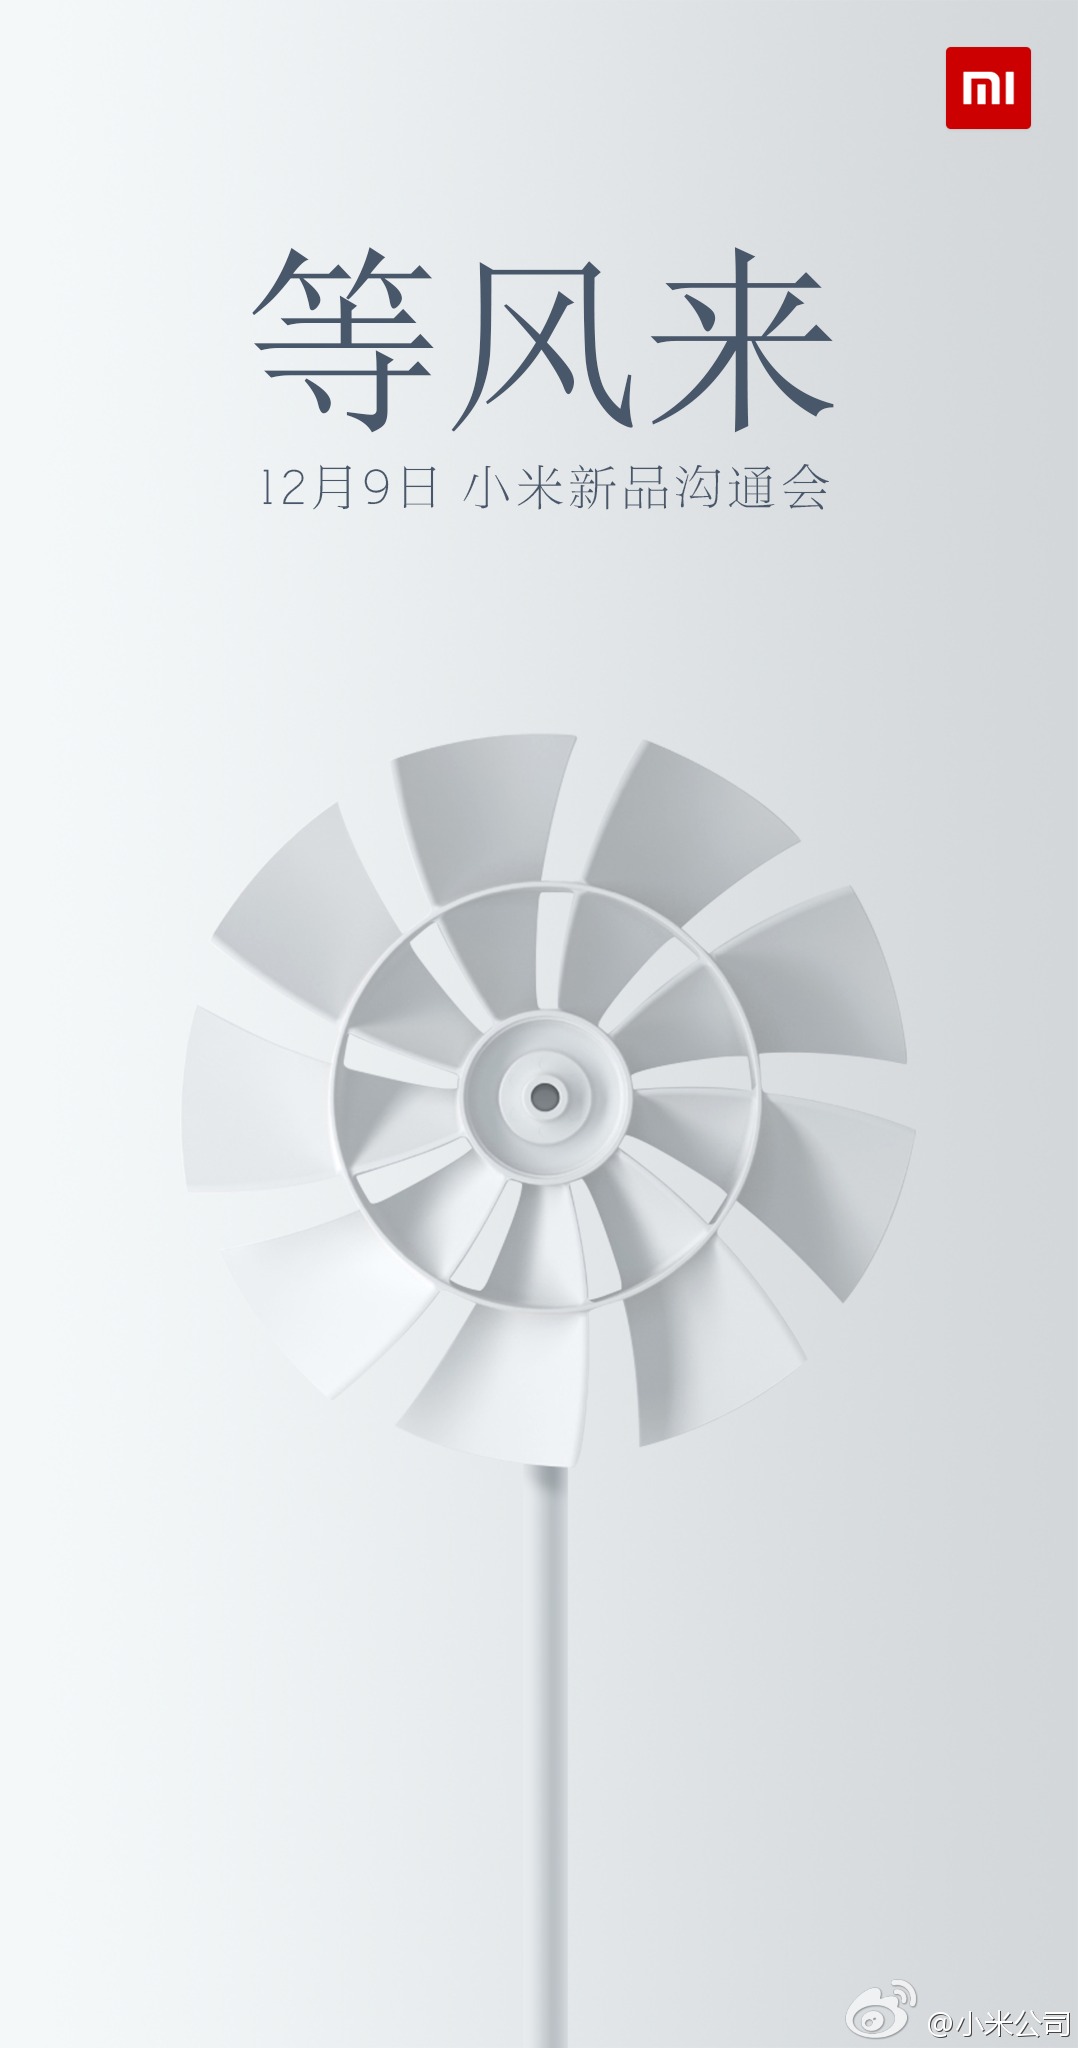 小米公司今天在微博发出预告,即将于 12 月 9 日